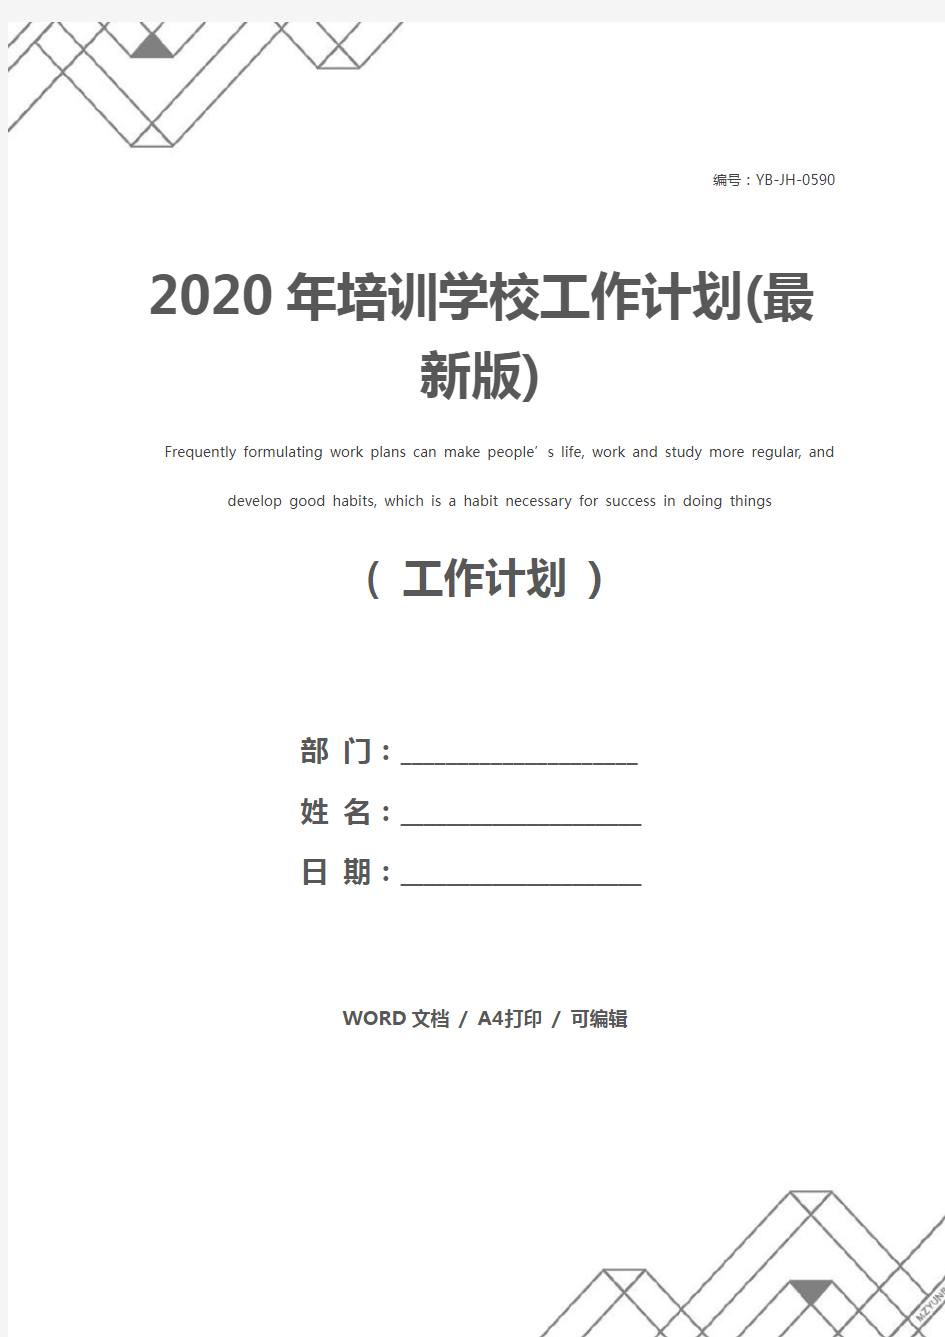 2020年培训学校工作计划(最新版)